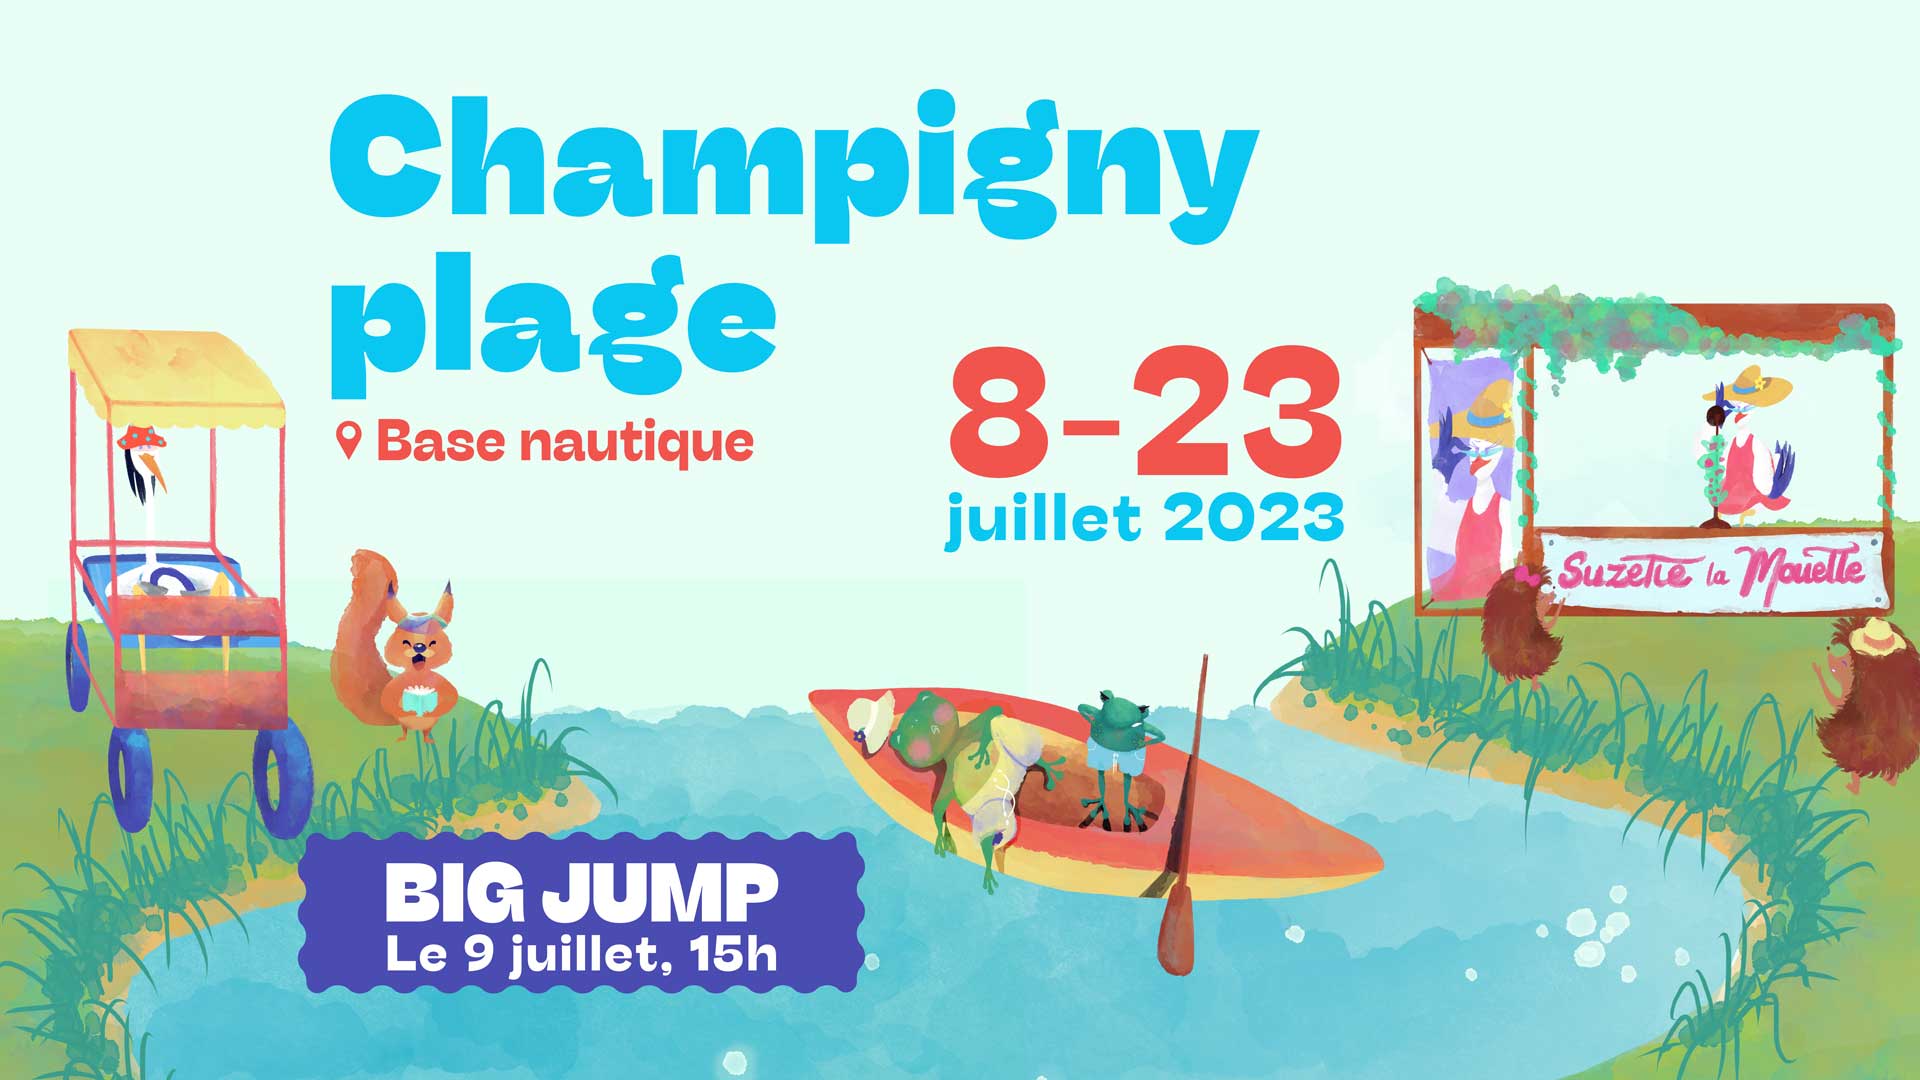 Champigny Plage du 8 au 23 juillet